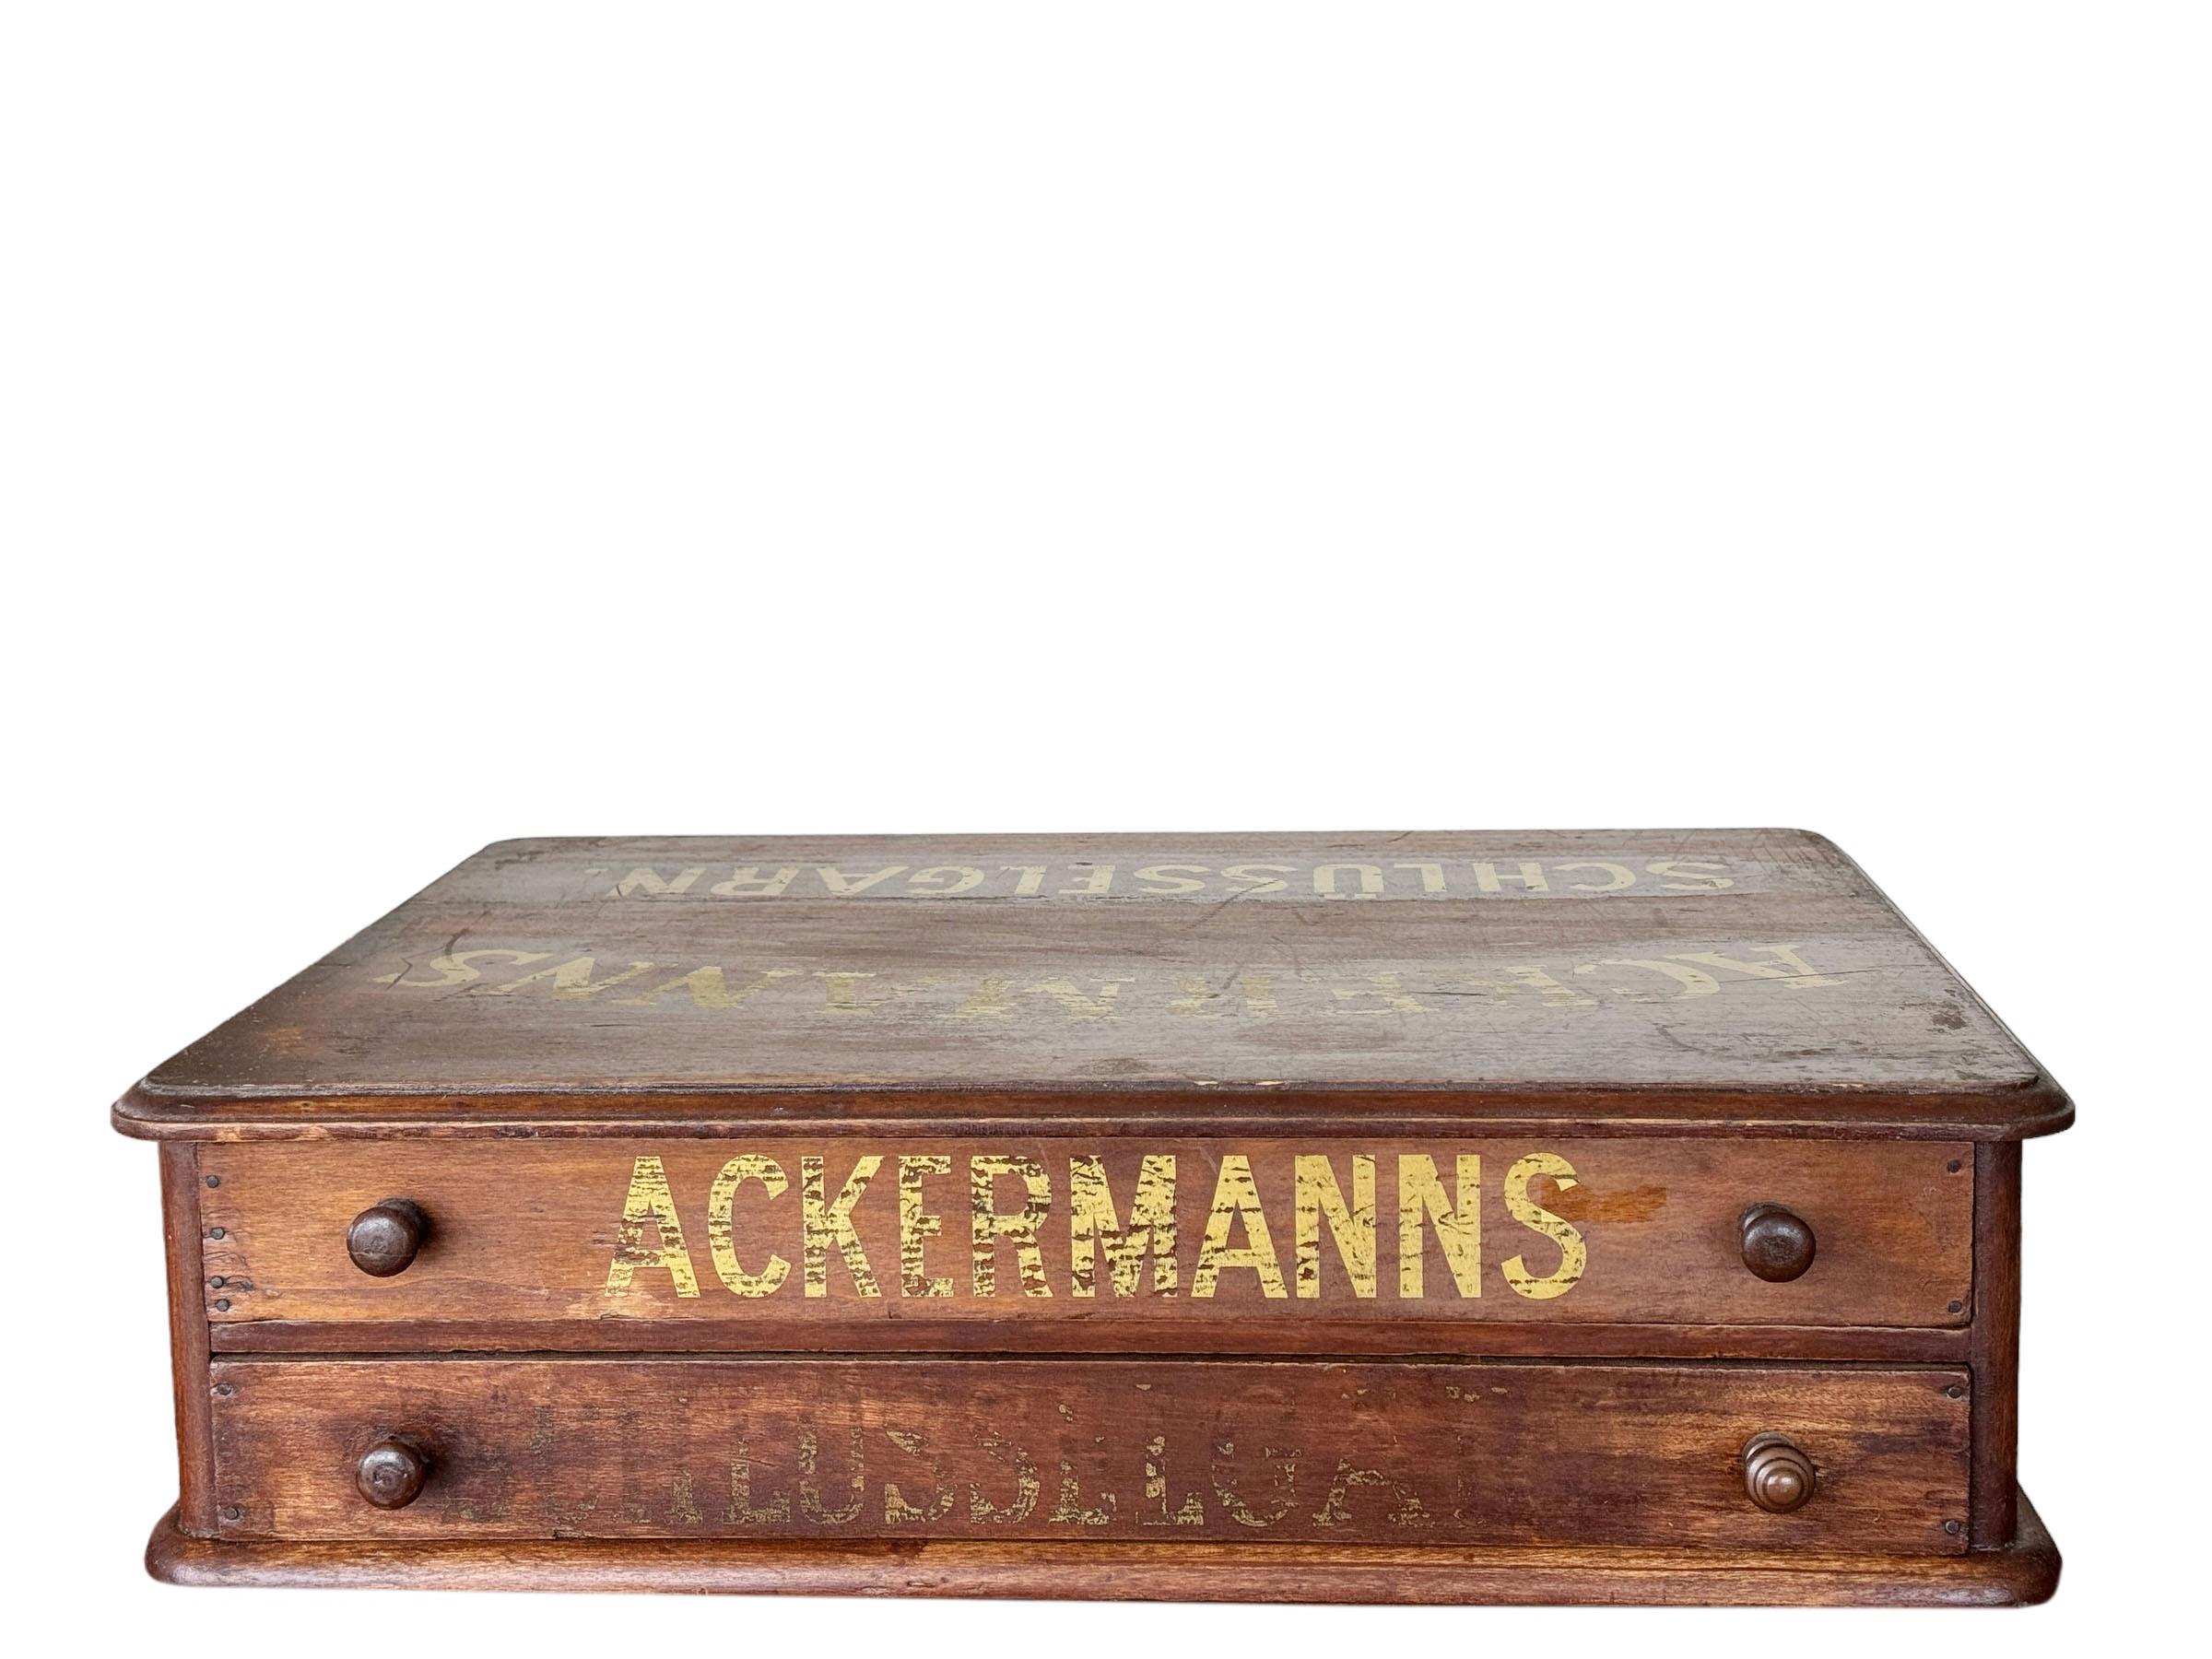 Ein deutscher Werbeschrank aus dem frühen 19. Jahrhundert. Kabinett mit zwei Schubladen mit Goldschrift auf der Oberseite und Schubladen, die Ackermanns Schlusselgarn liest. Es scheint, dass es auf der Ladentheke lag, so dass die Oberseite dem